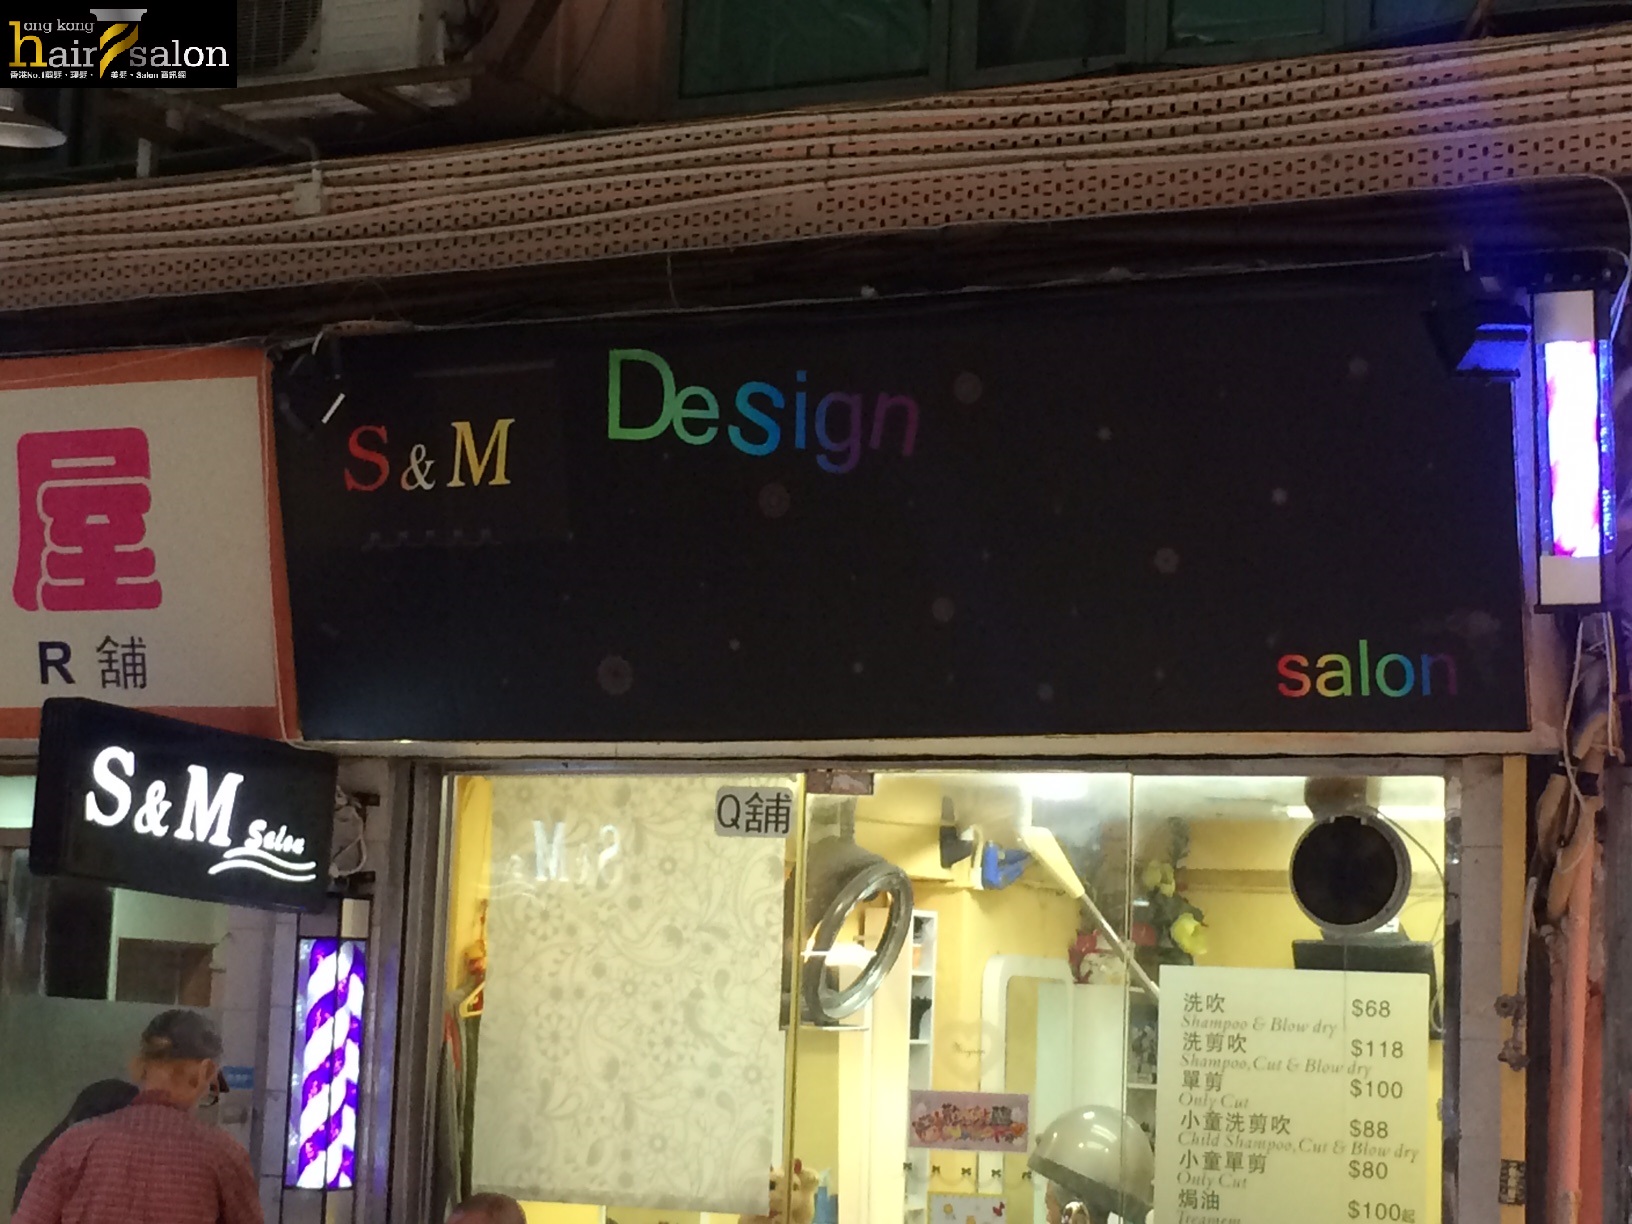 電髮/負離子: S&M Design Salon